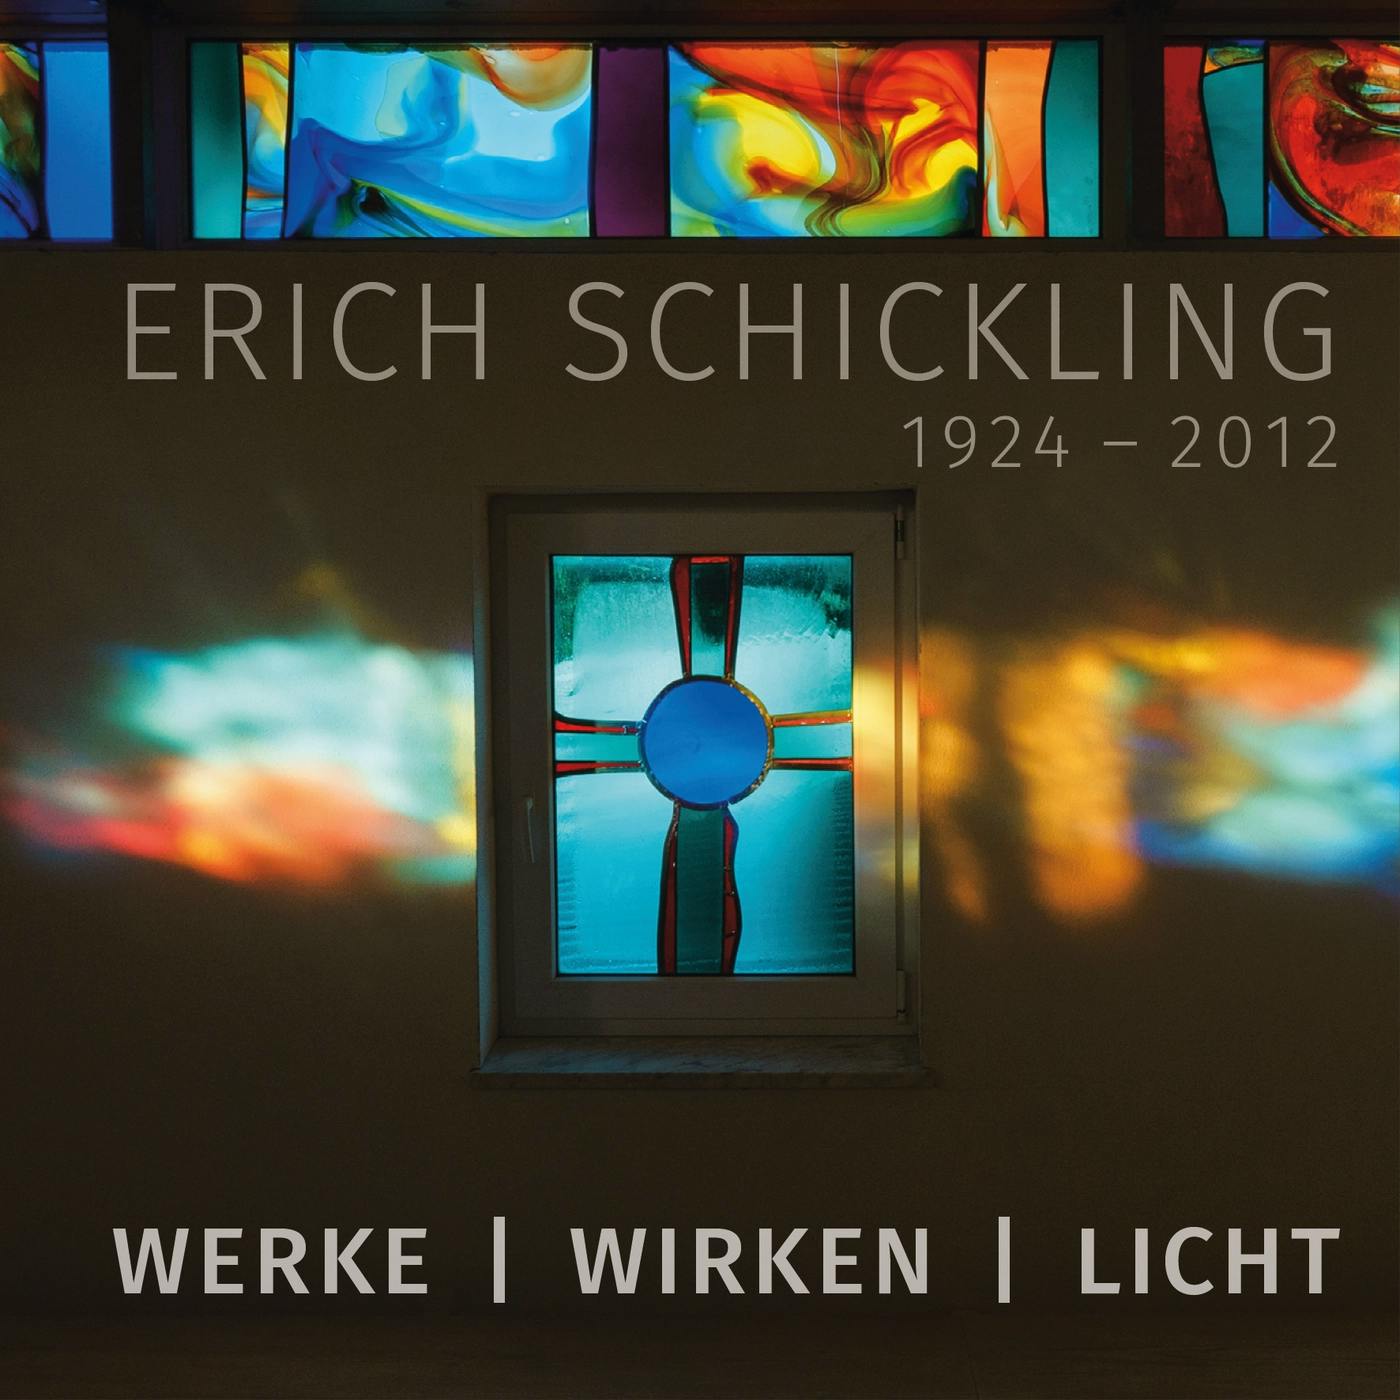 Cover des Bildbands “WERKE - WIRKEN - LICHT”